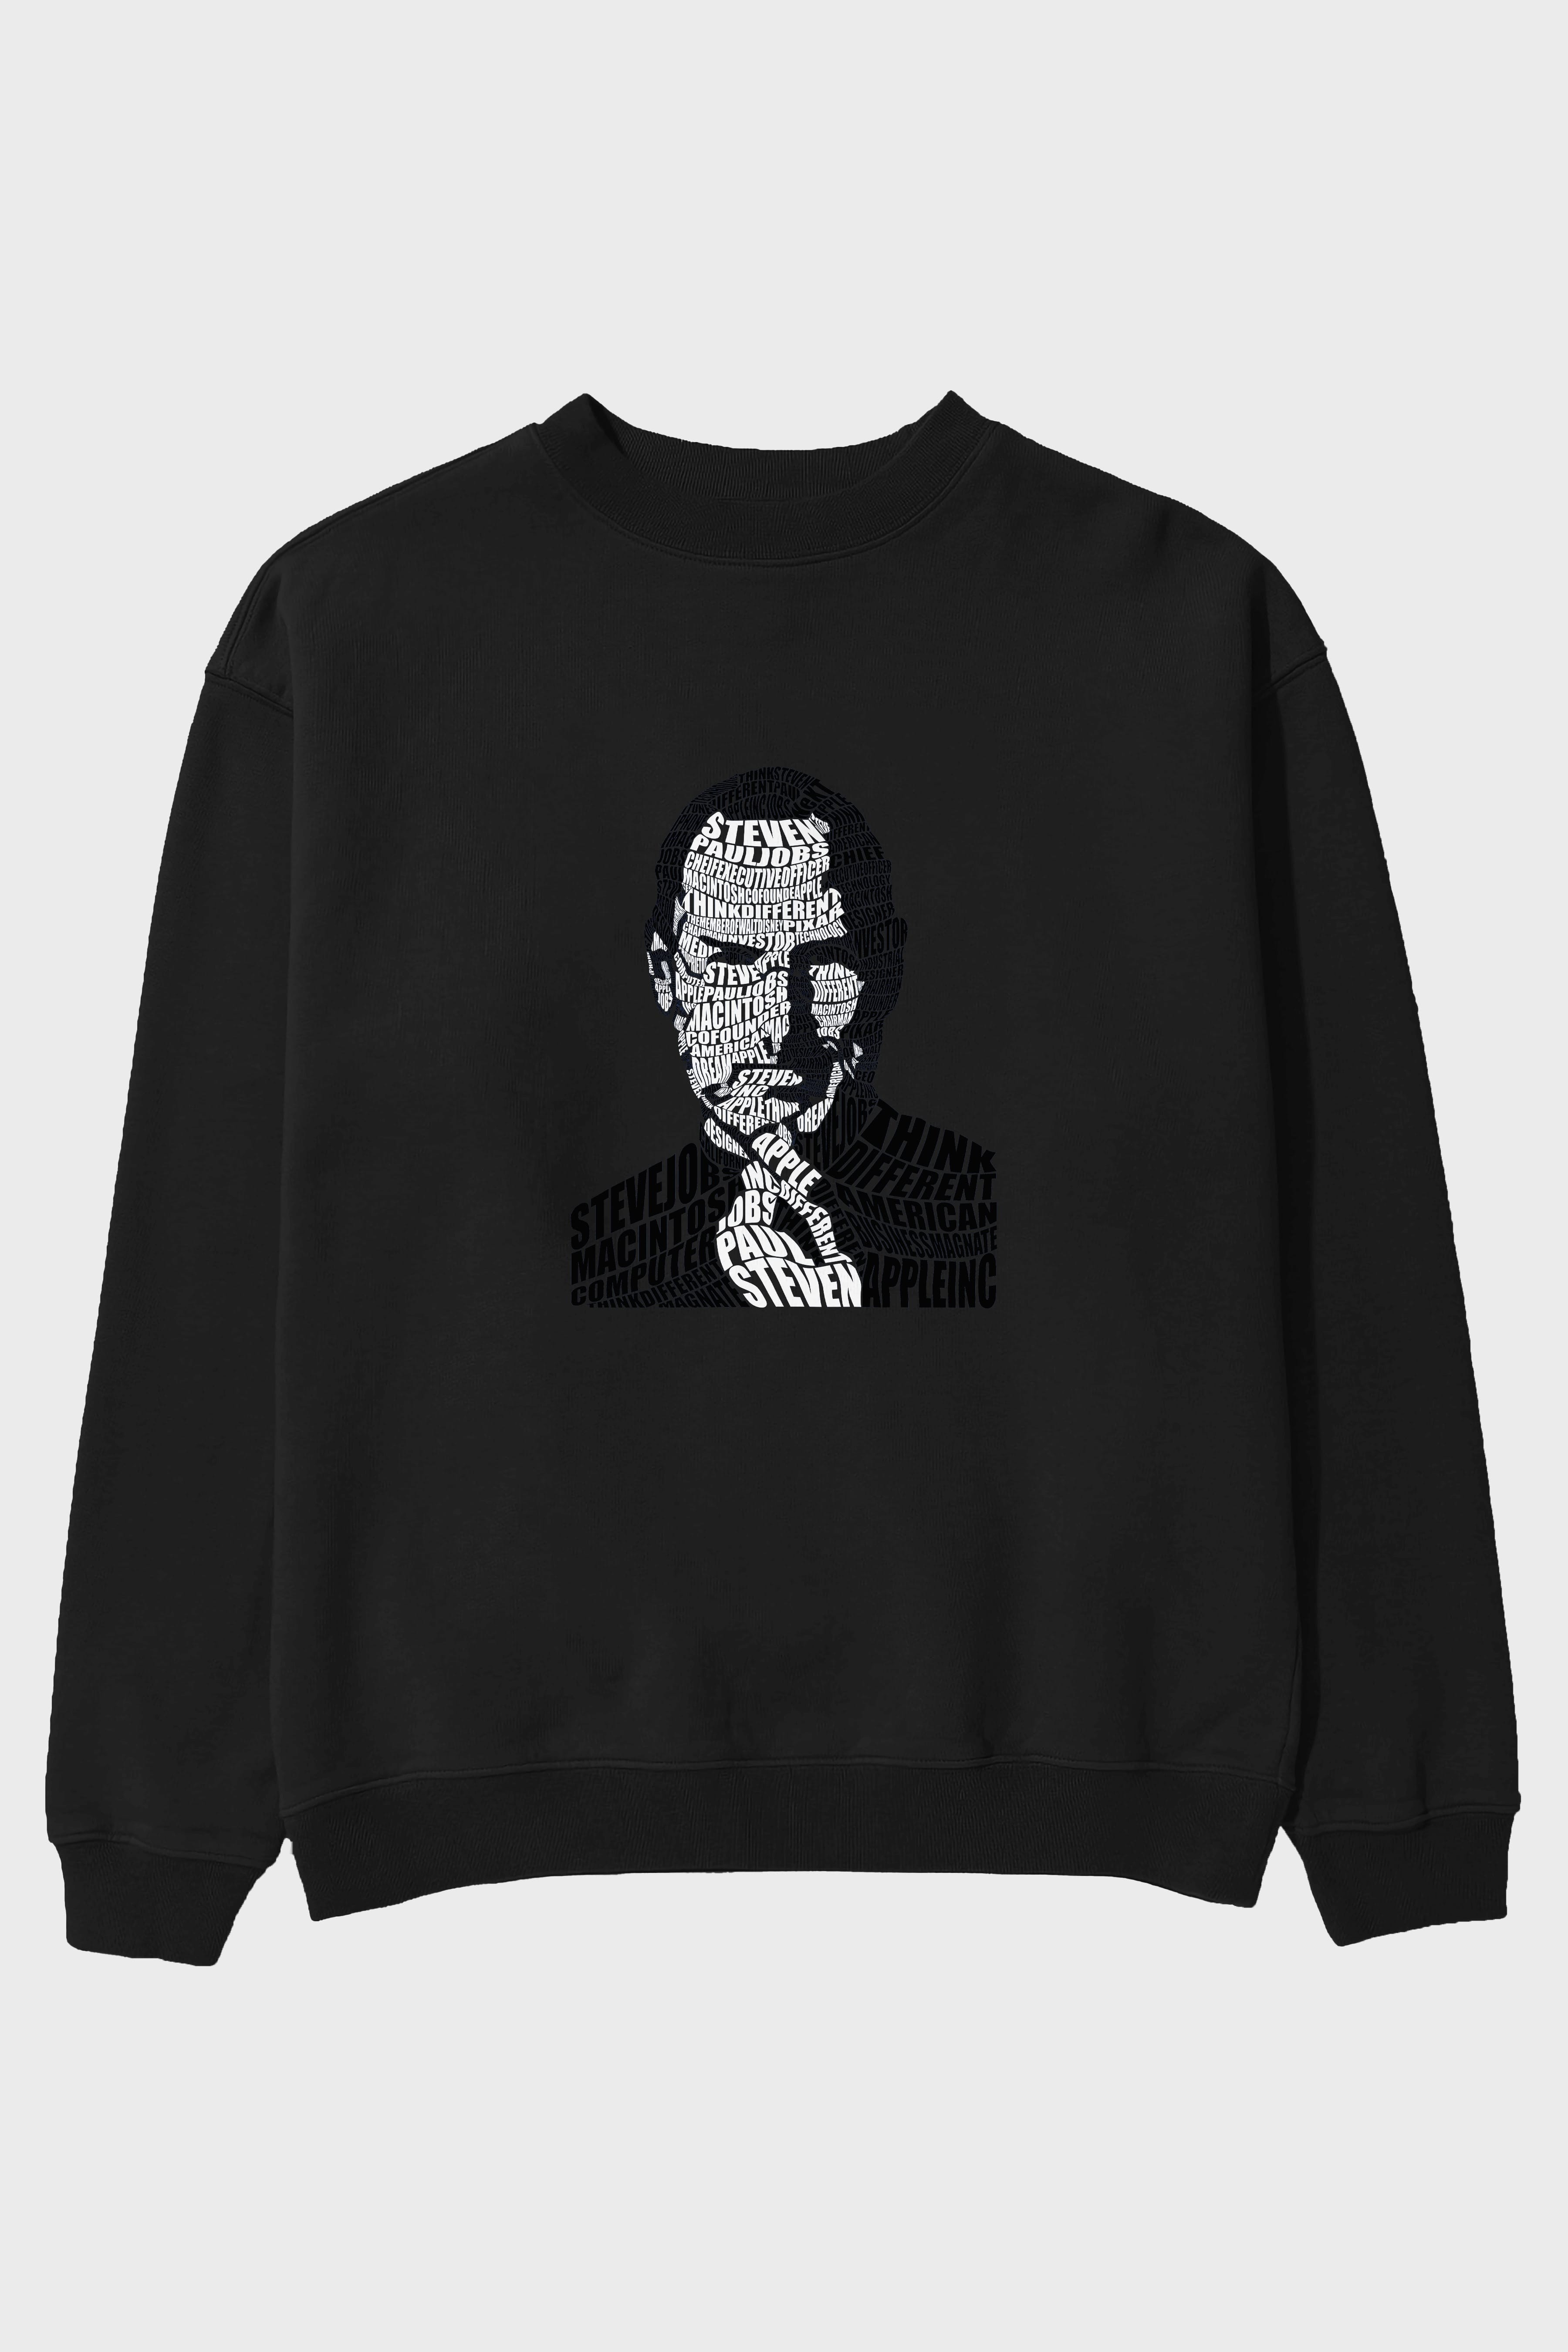 Steve Jobs Calligram Ön Baskılı Oversize Sweatshirt Erkek Kadın Unisex